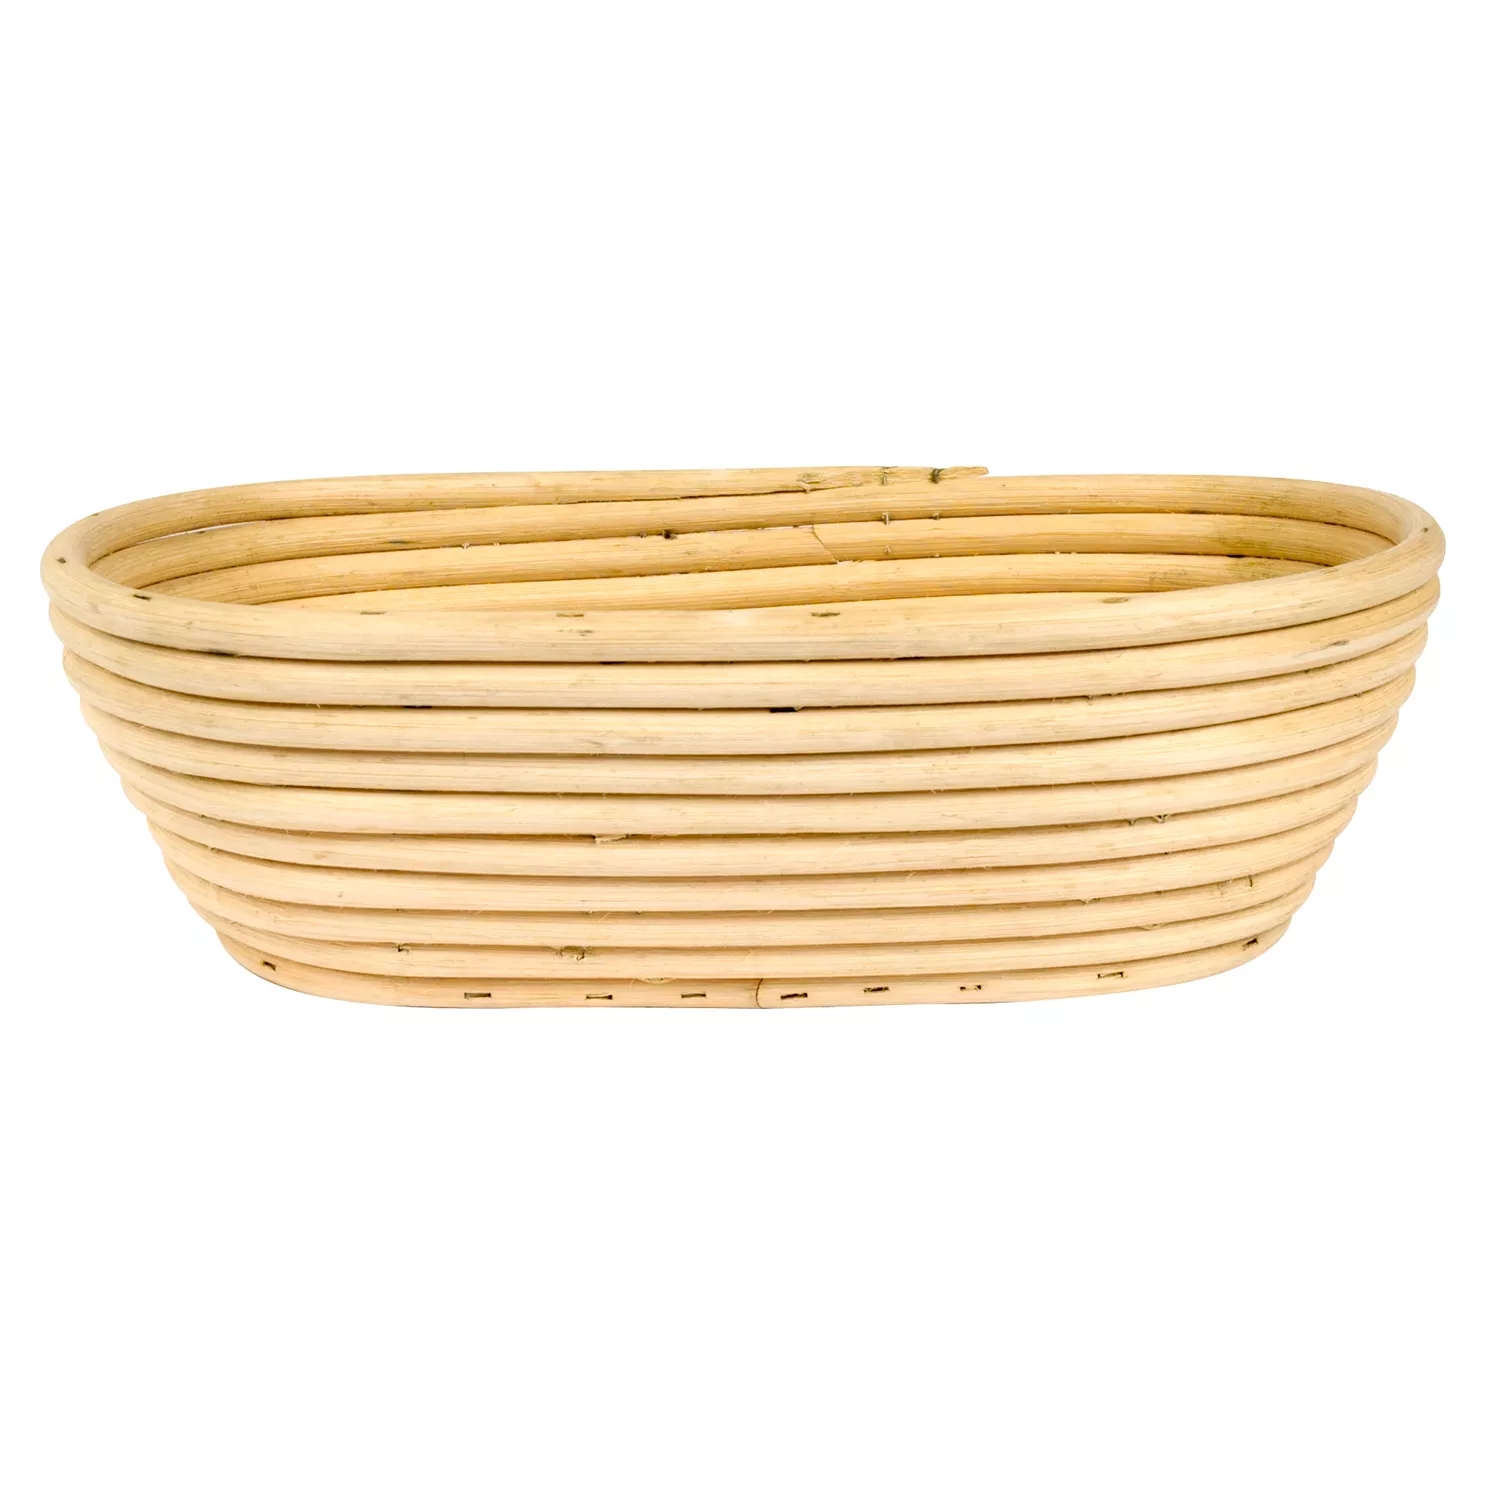 Frieling Banneton Oval Bread Basket